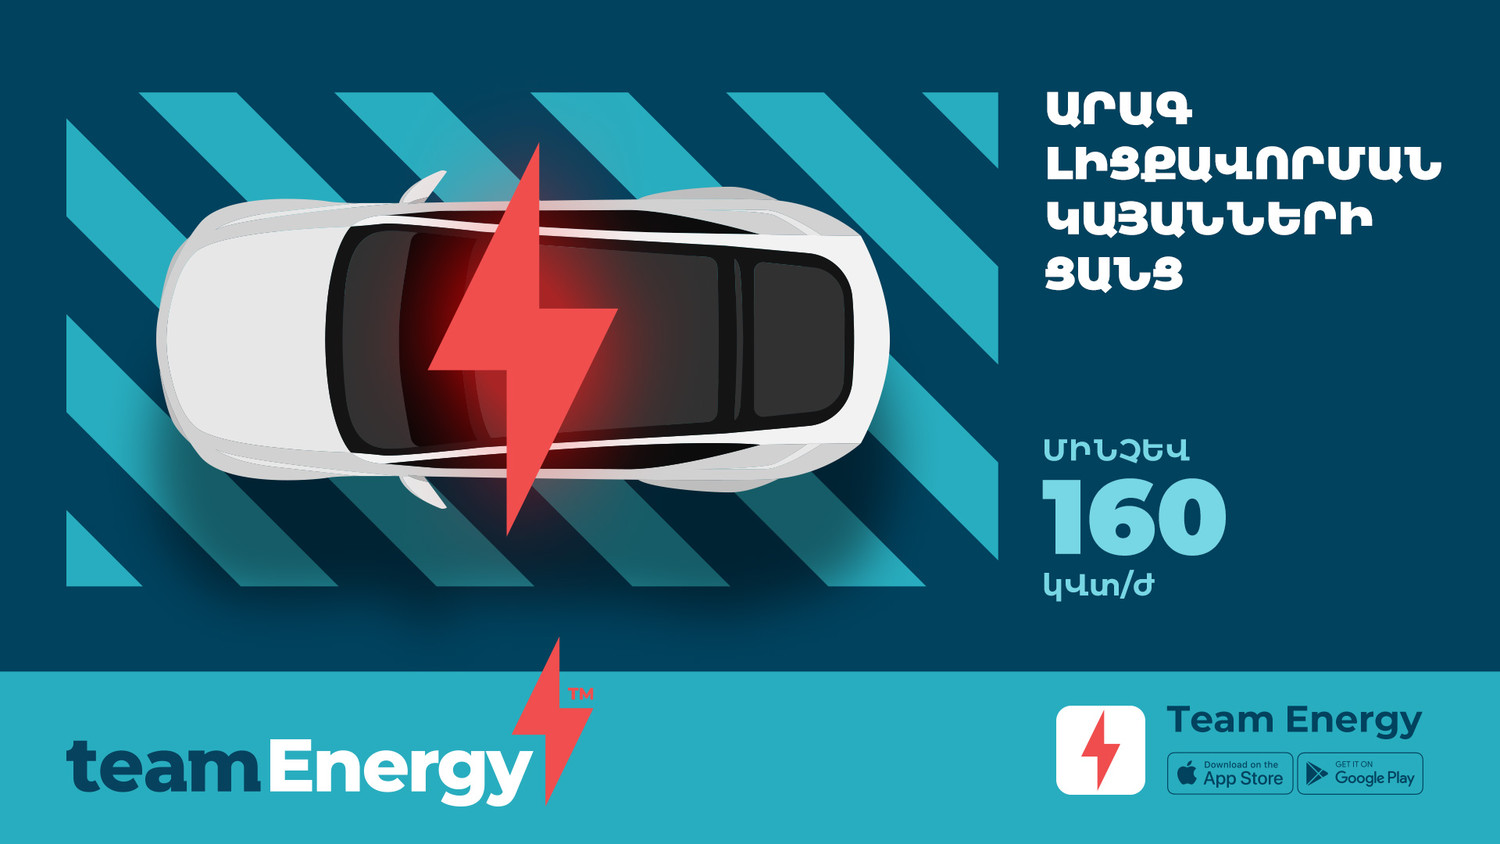 eam Energy․ Էլեկտրական մեքենայով ճամփորդություն՝ առանց լիցքավորման մասին մտածելու